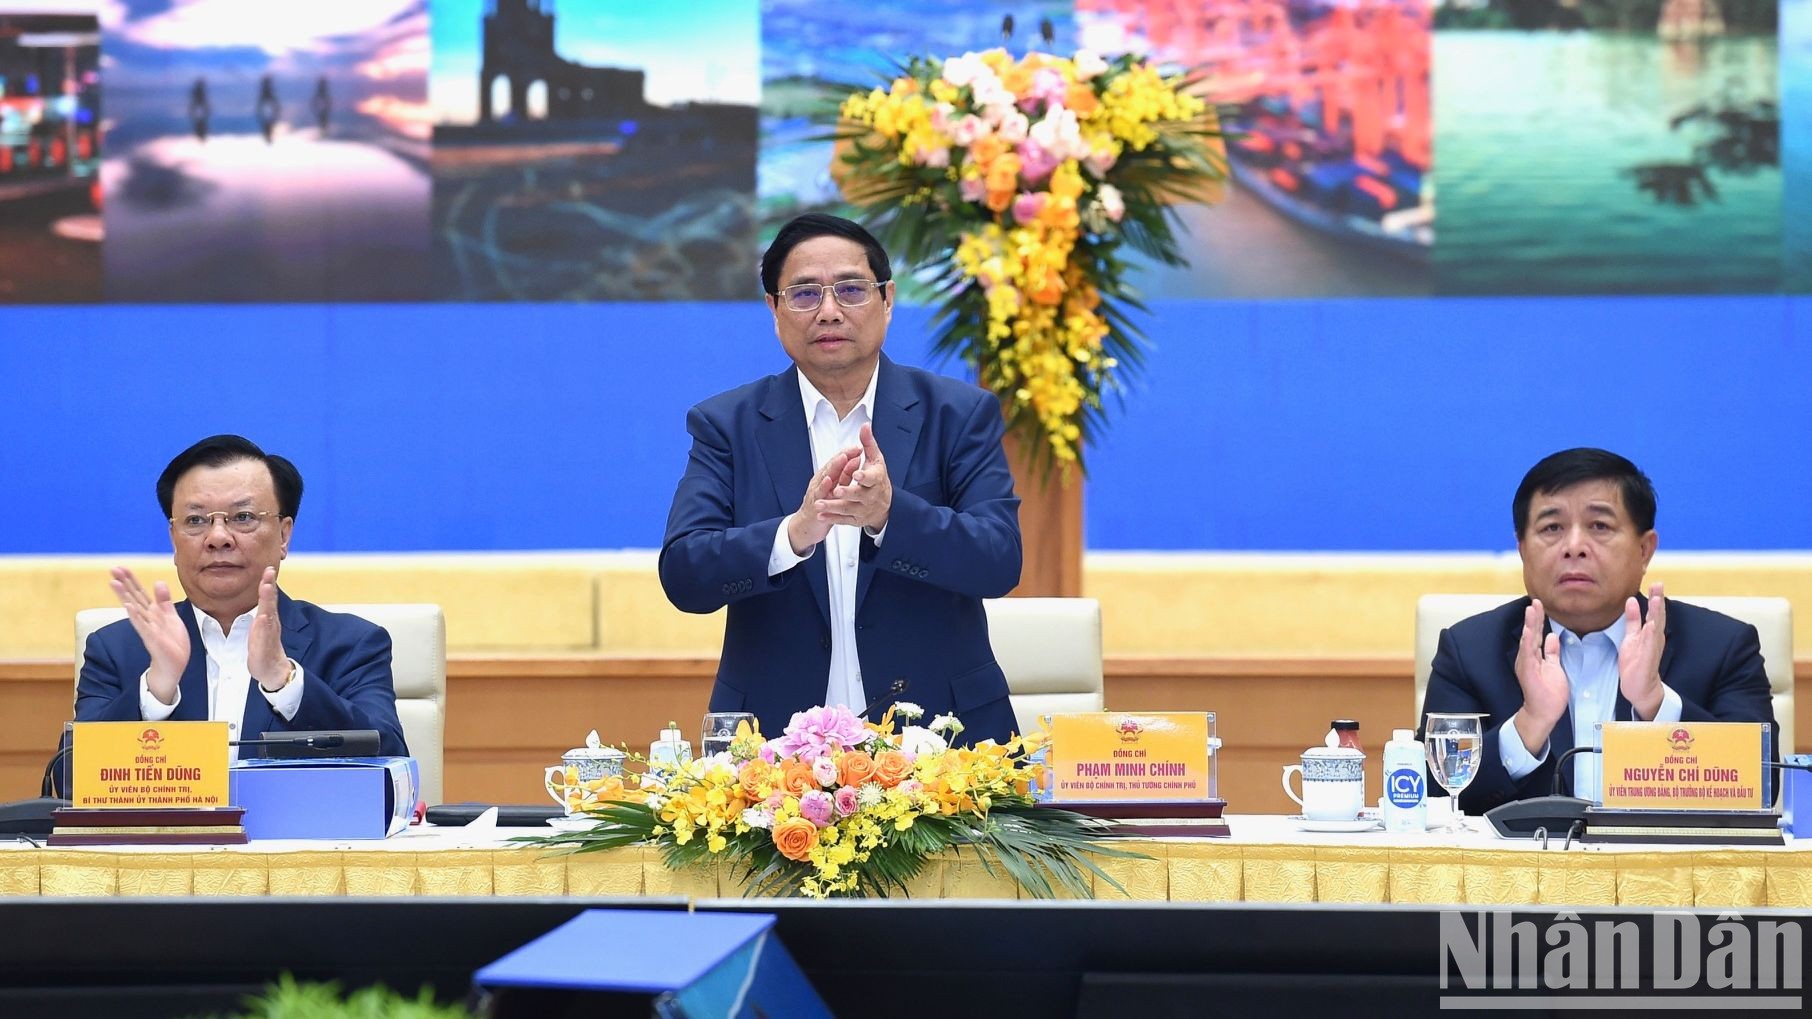 Thủ tướng Phạm Minh Chính chủ trì Hội nghị lần thứ 3 của Hội đồng điều phối vùng Đồng bằng sông Hồng để công bố Quy hoạch vùng Đồng bằng sông Hồng thời kỳ 2021-2030, tầm nhìn đến năm 2050. 